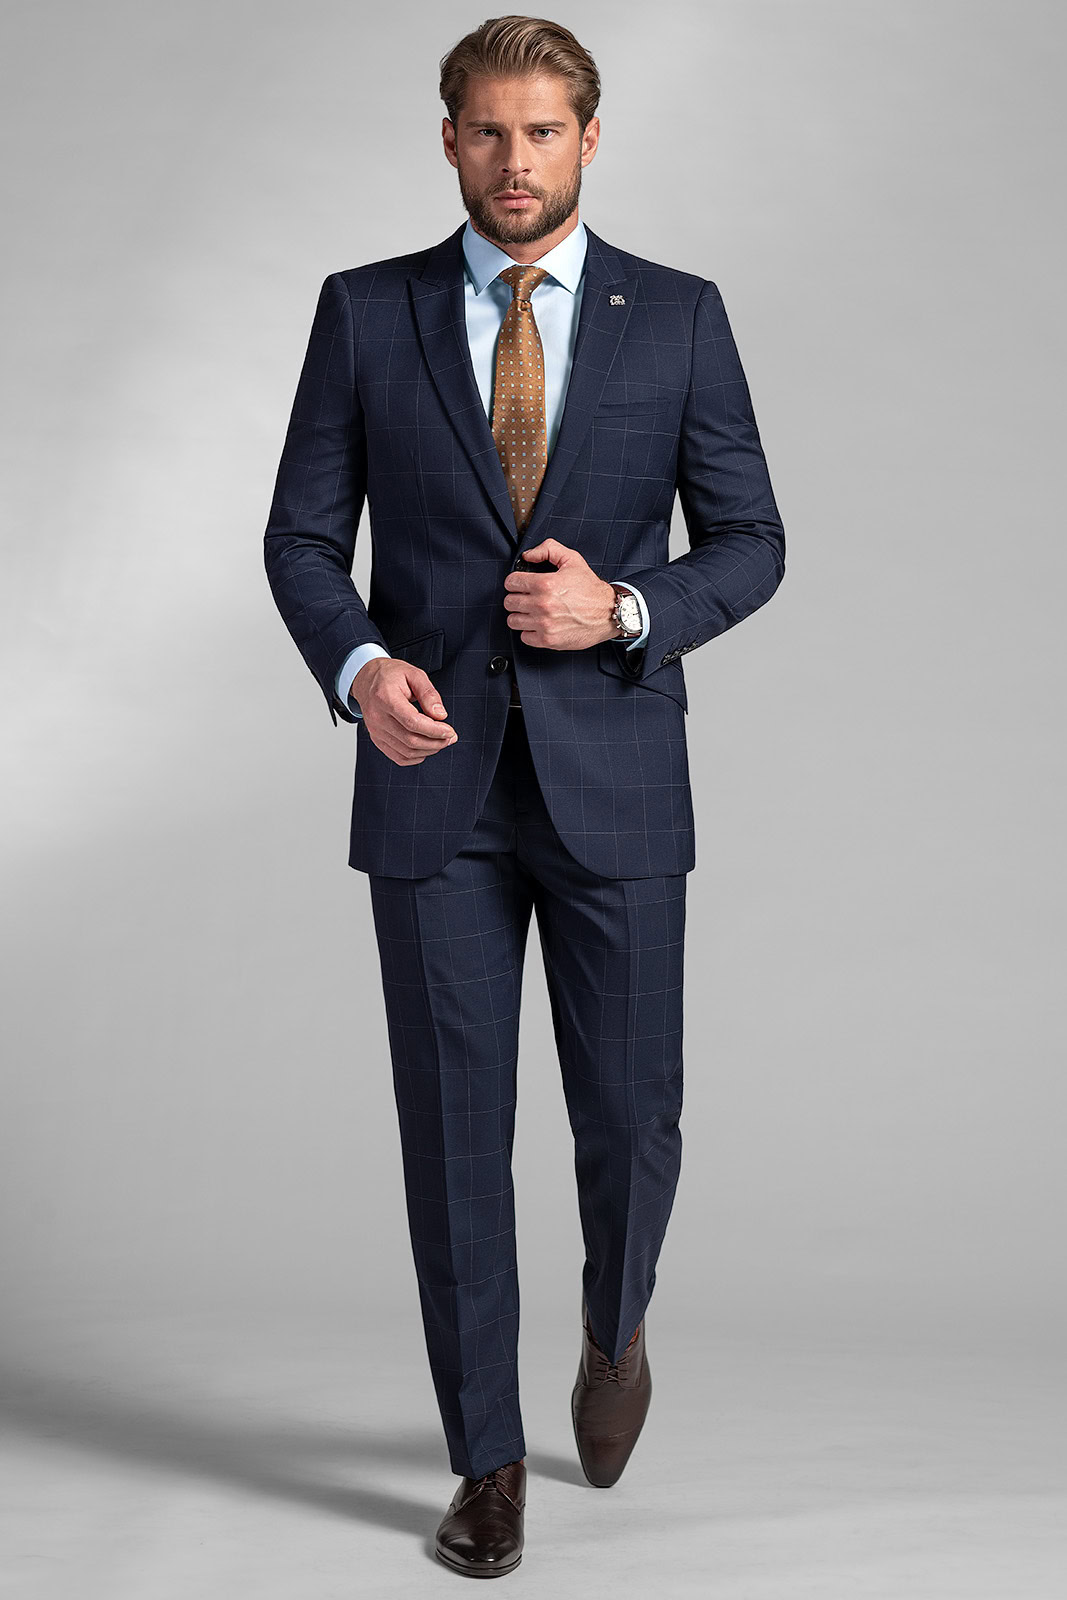 Pánský oblek BANDI Lacrone Marin, Tailored Fit